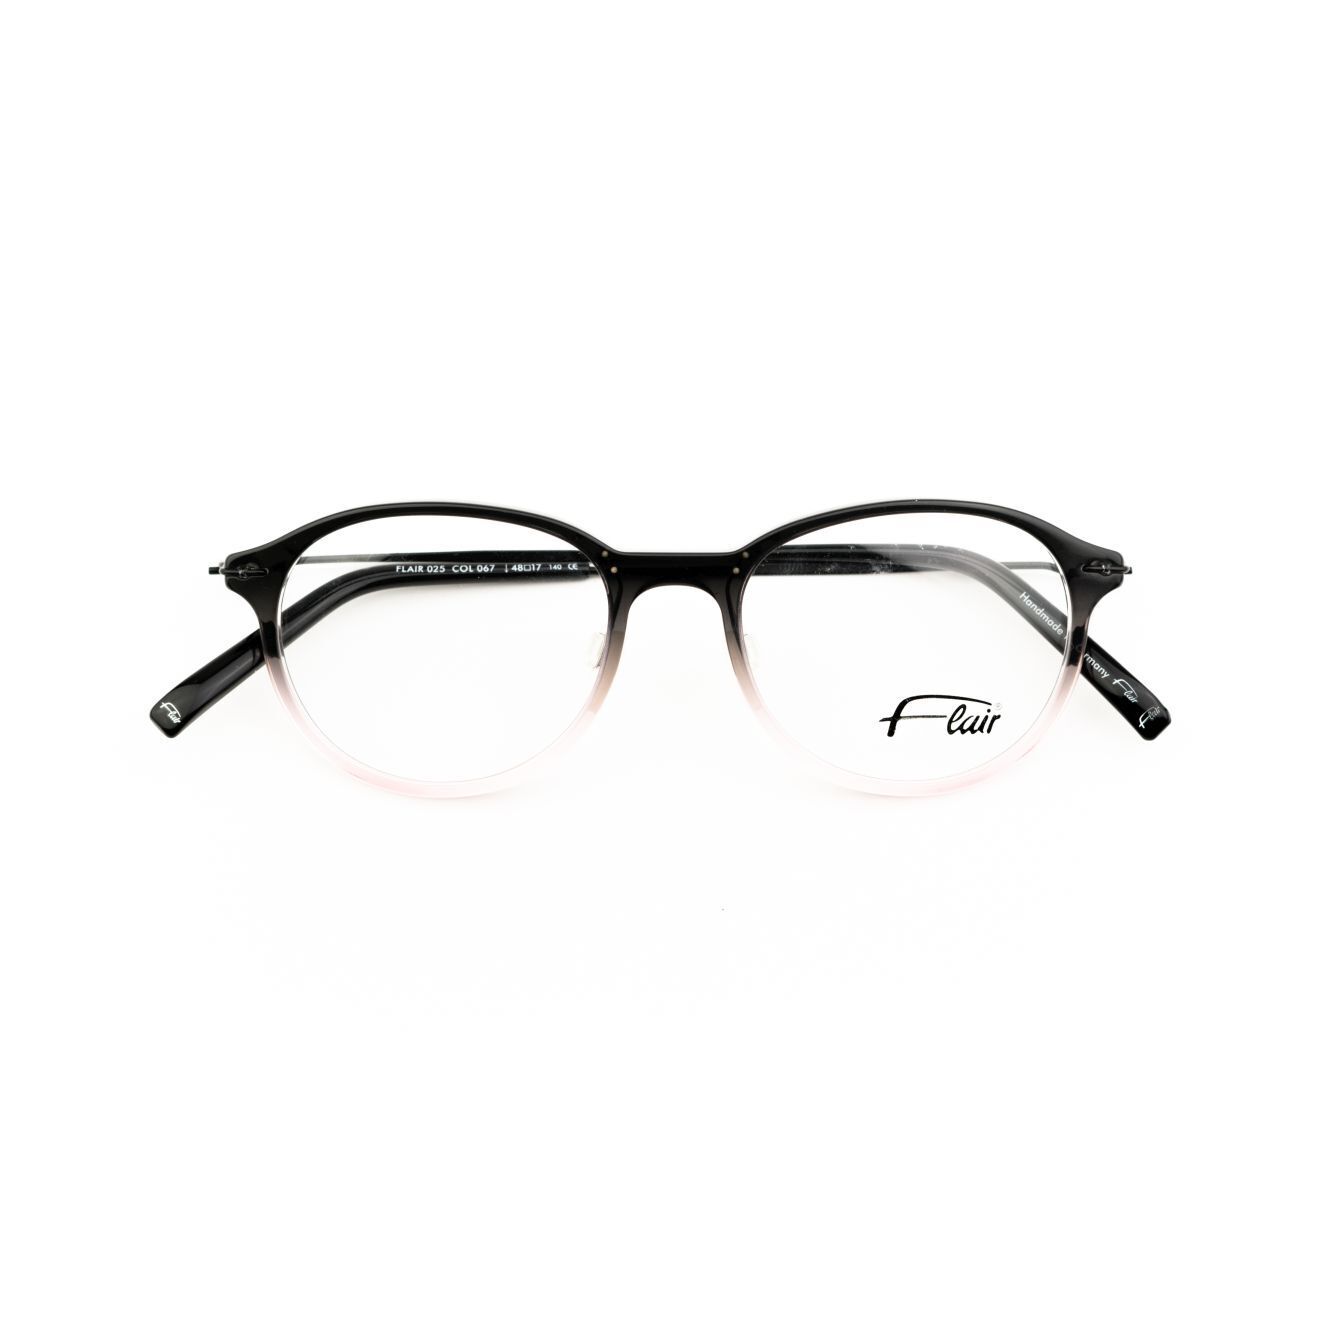 FLAIR 025 067 Fassung Brille Brillengestell Brillenfassun